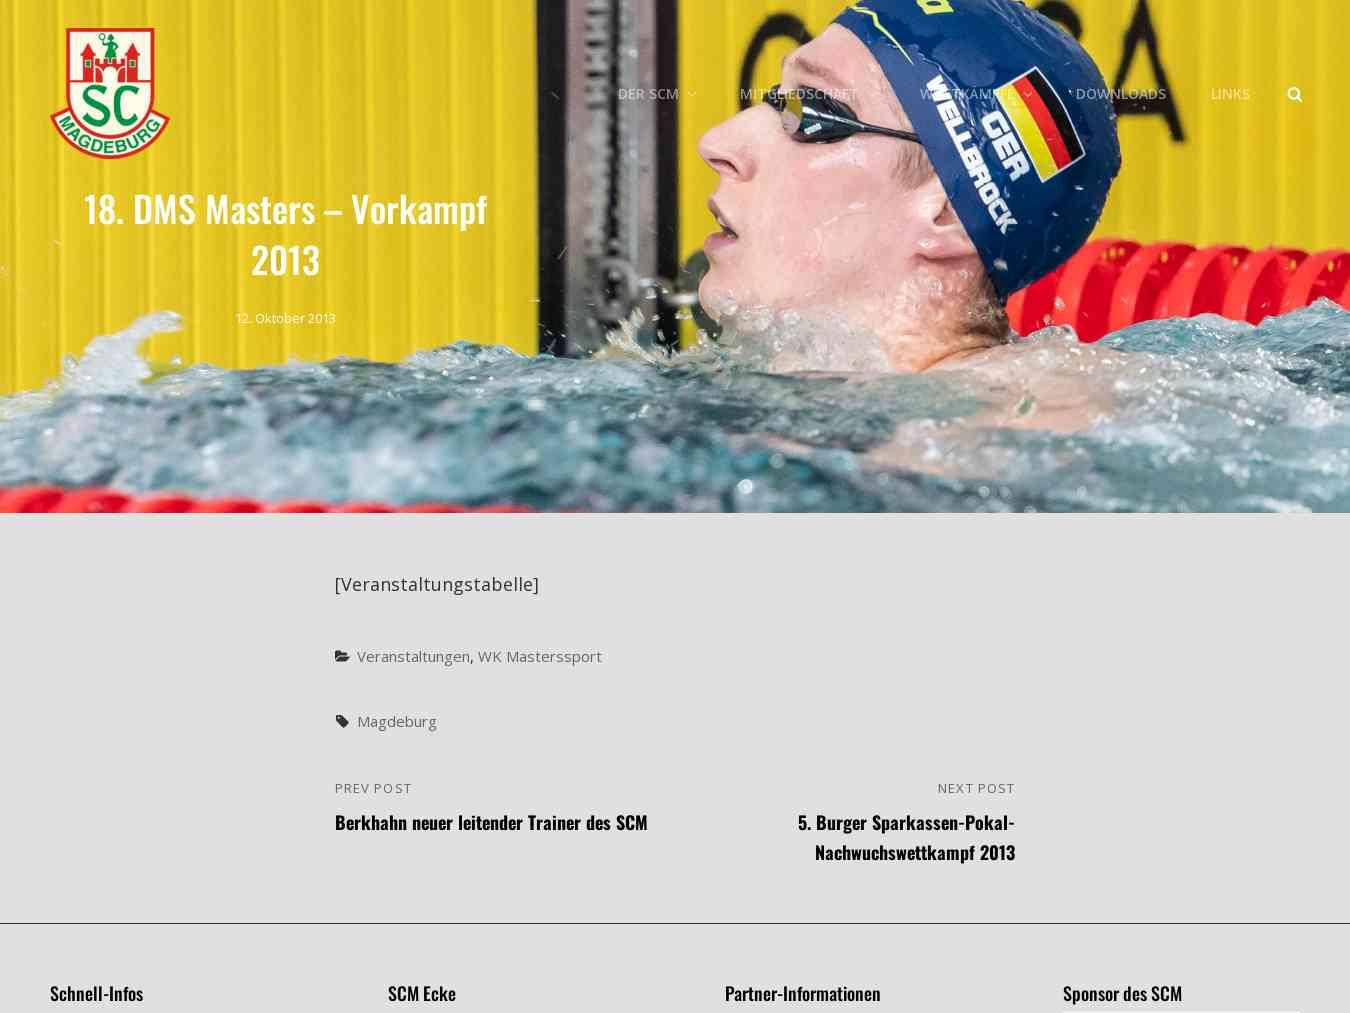 Veranstalterhomepage - http://scm-schwimmen.de/2013/10/18-dms-masters-vorkampf-2013/